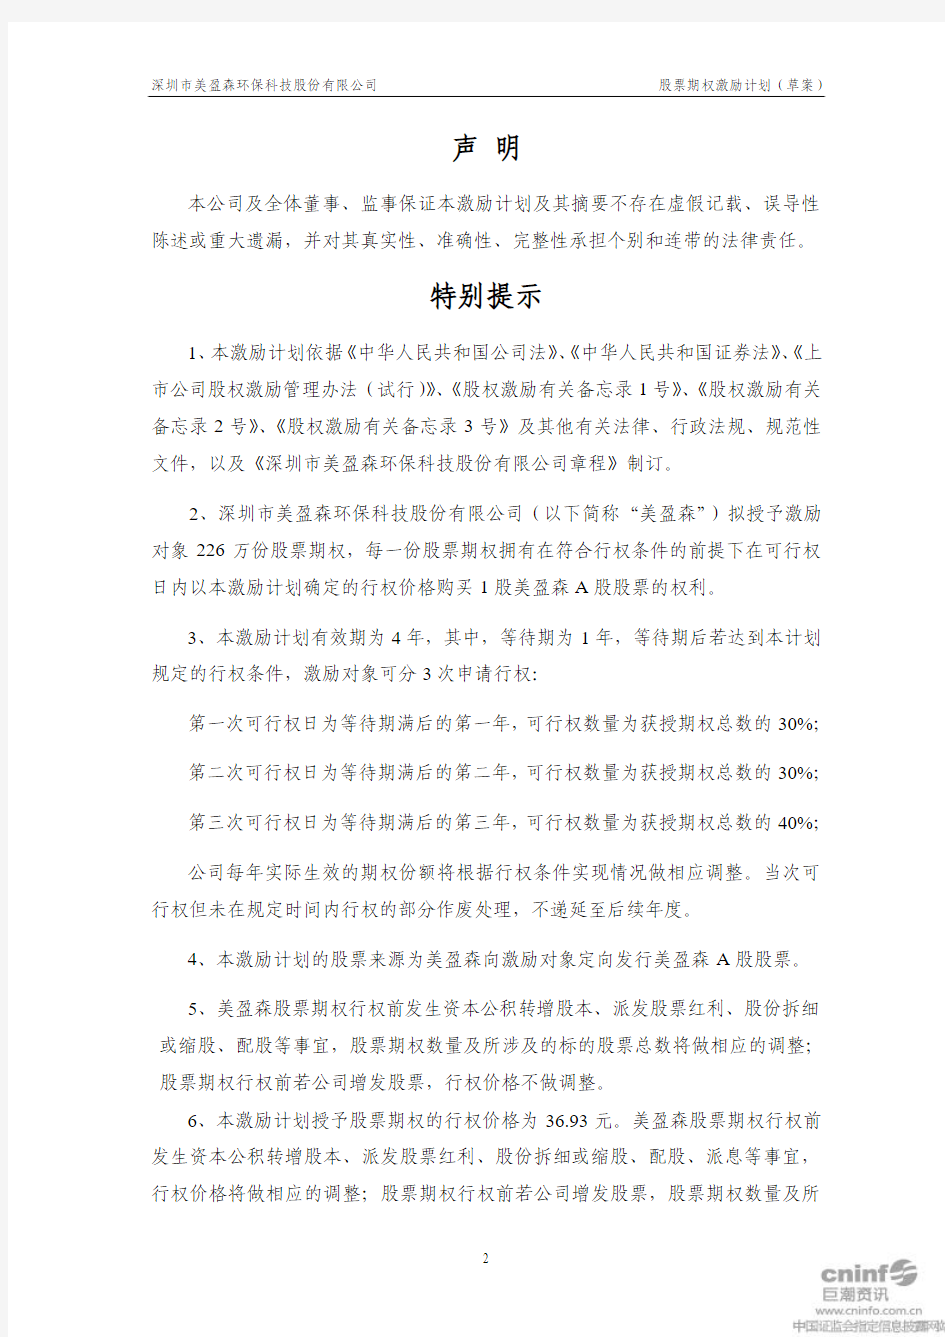 深圳市美盈森环保科技股份有限公司 股票期权激励计划(草案)